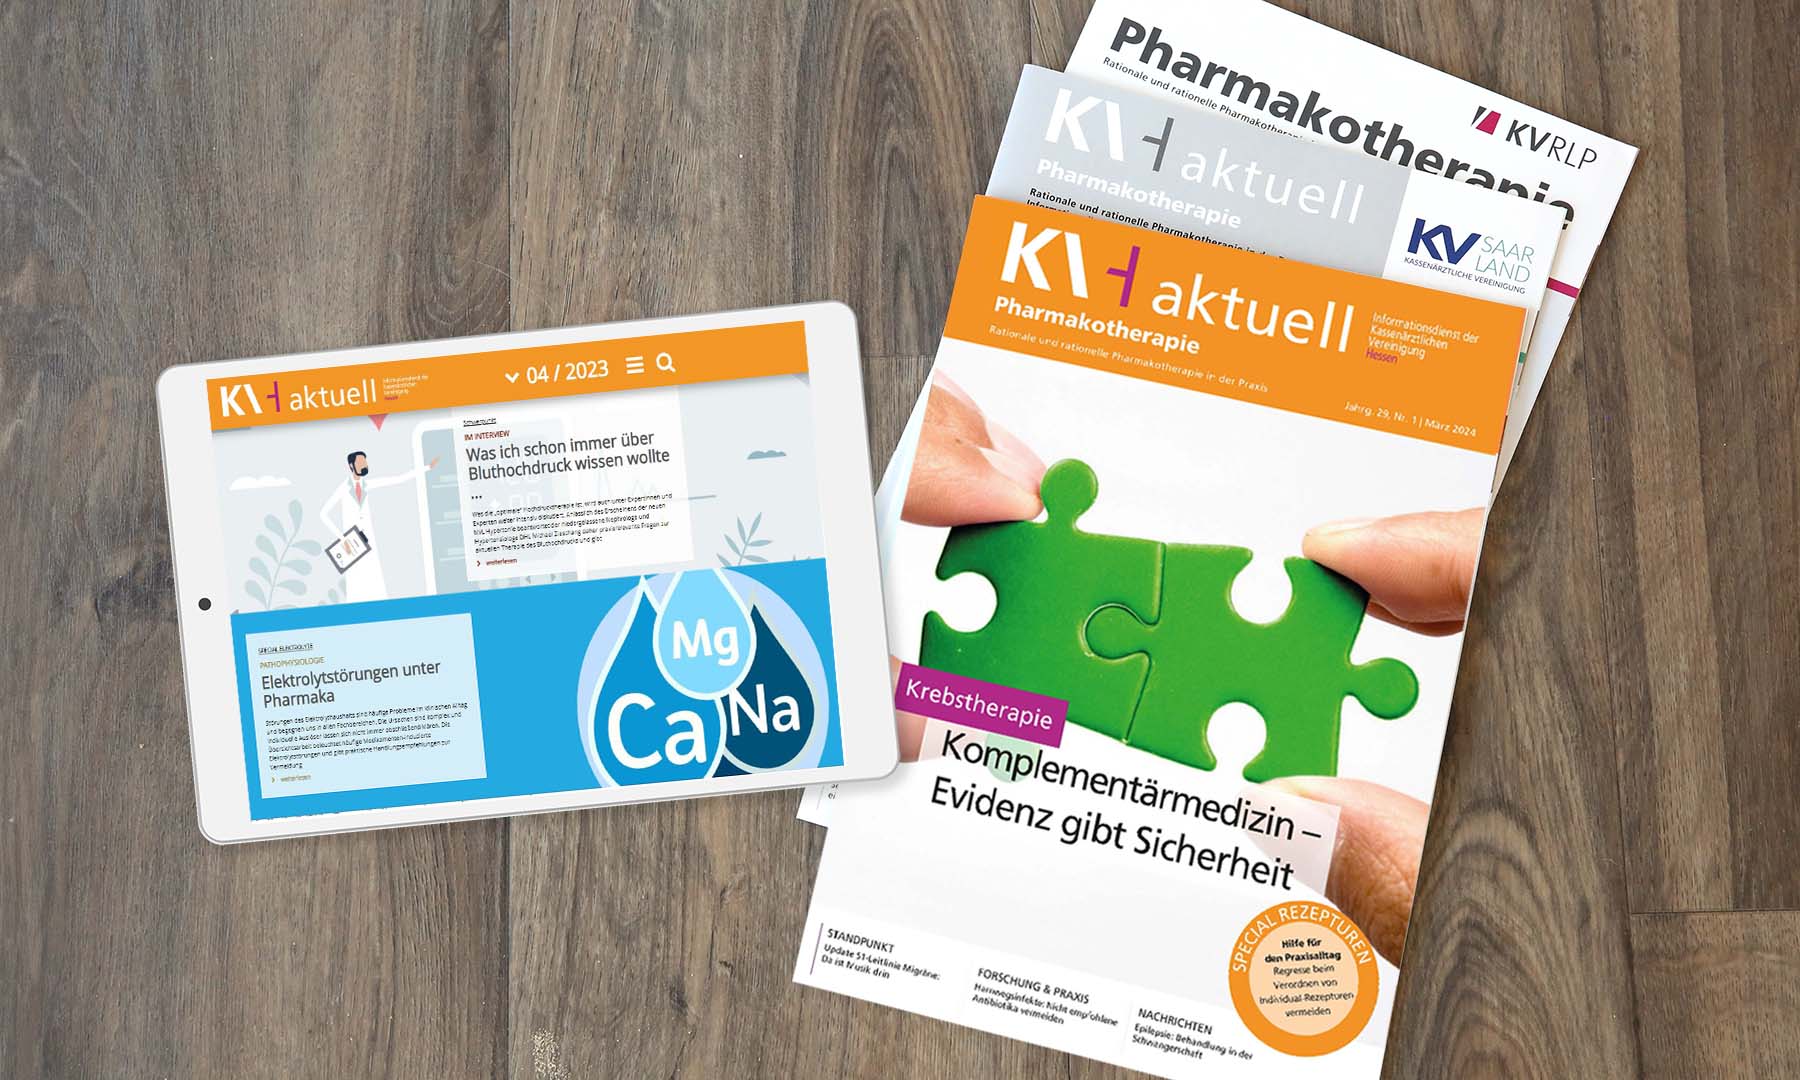 Links auf Hintergrund aus Holz Tablet mit WebMag letzte Ausgabe, rechts KVH aktuell Printausgabe mit aktuellem Titel